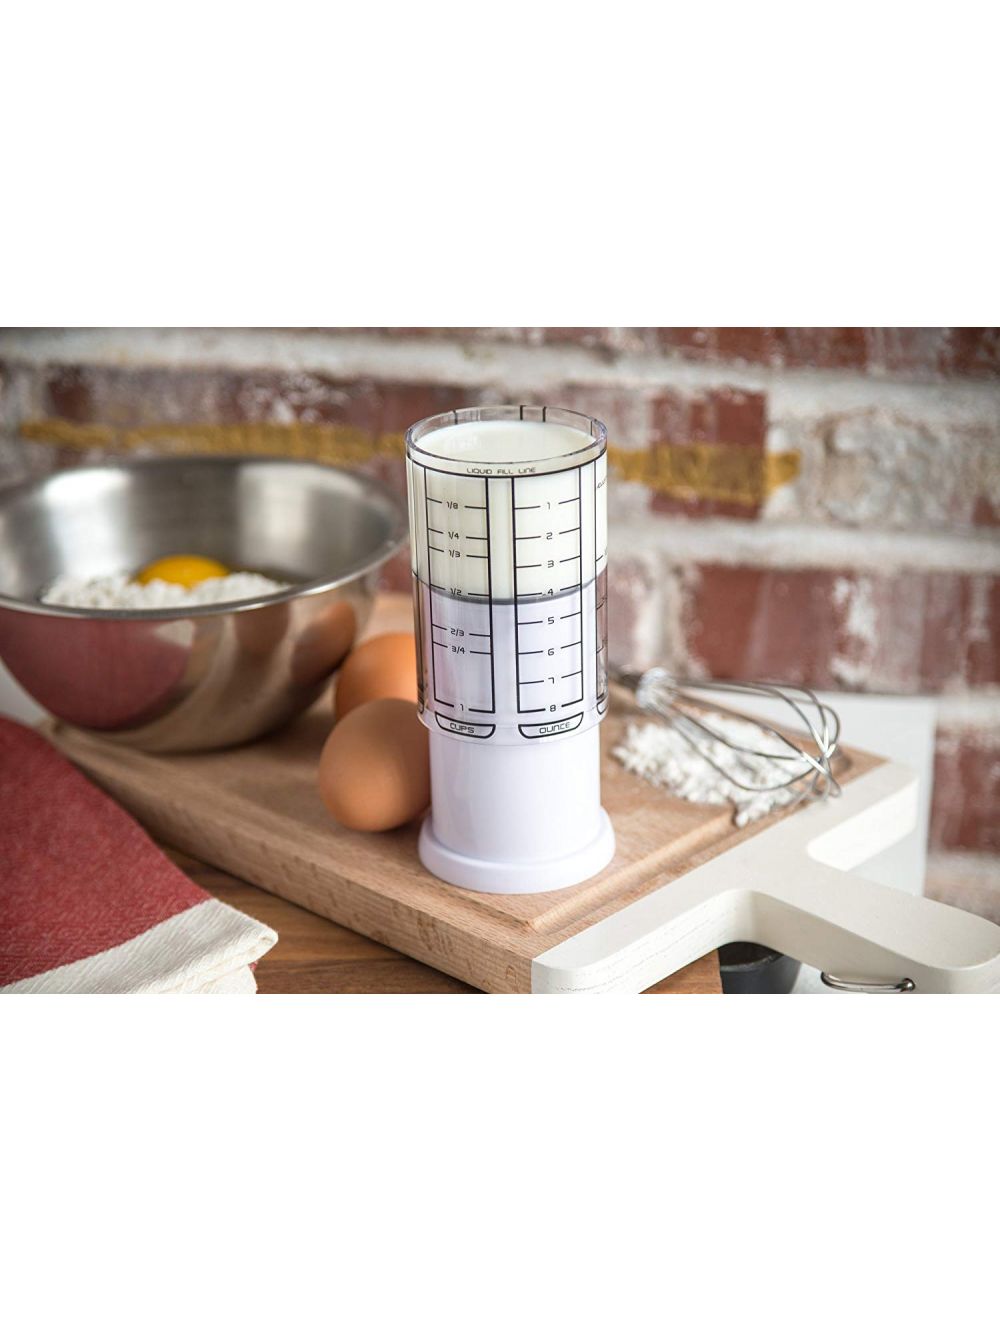 Adjustable measuring cup